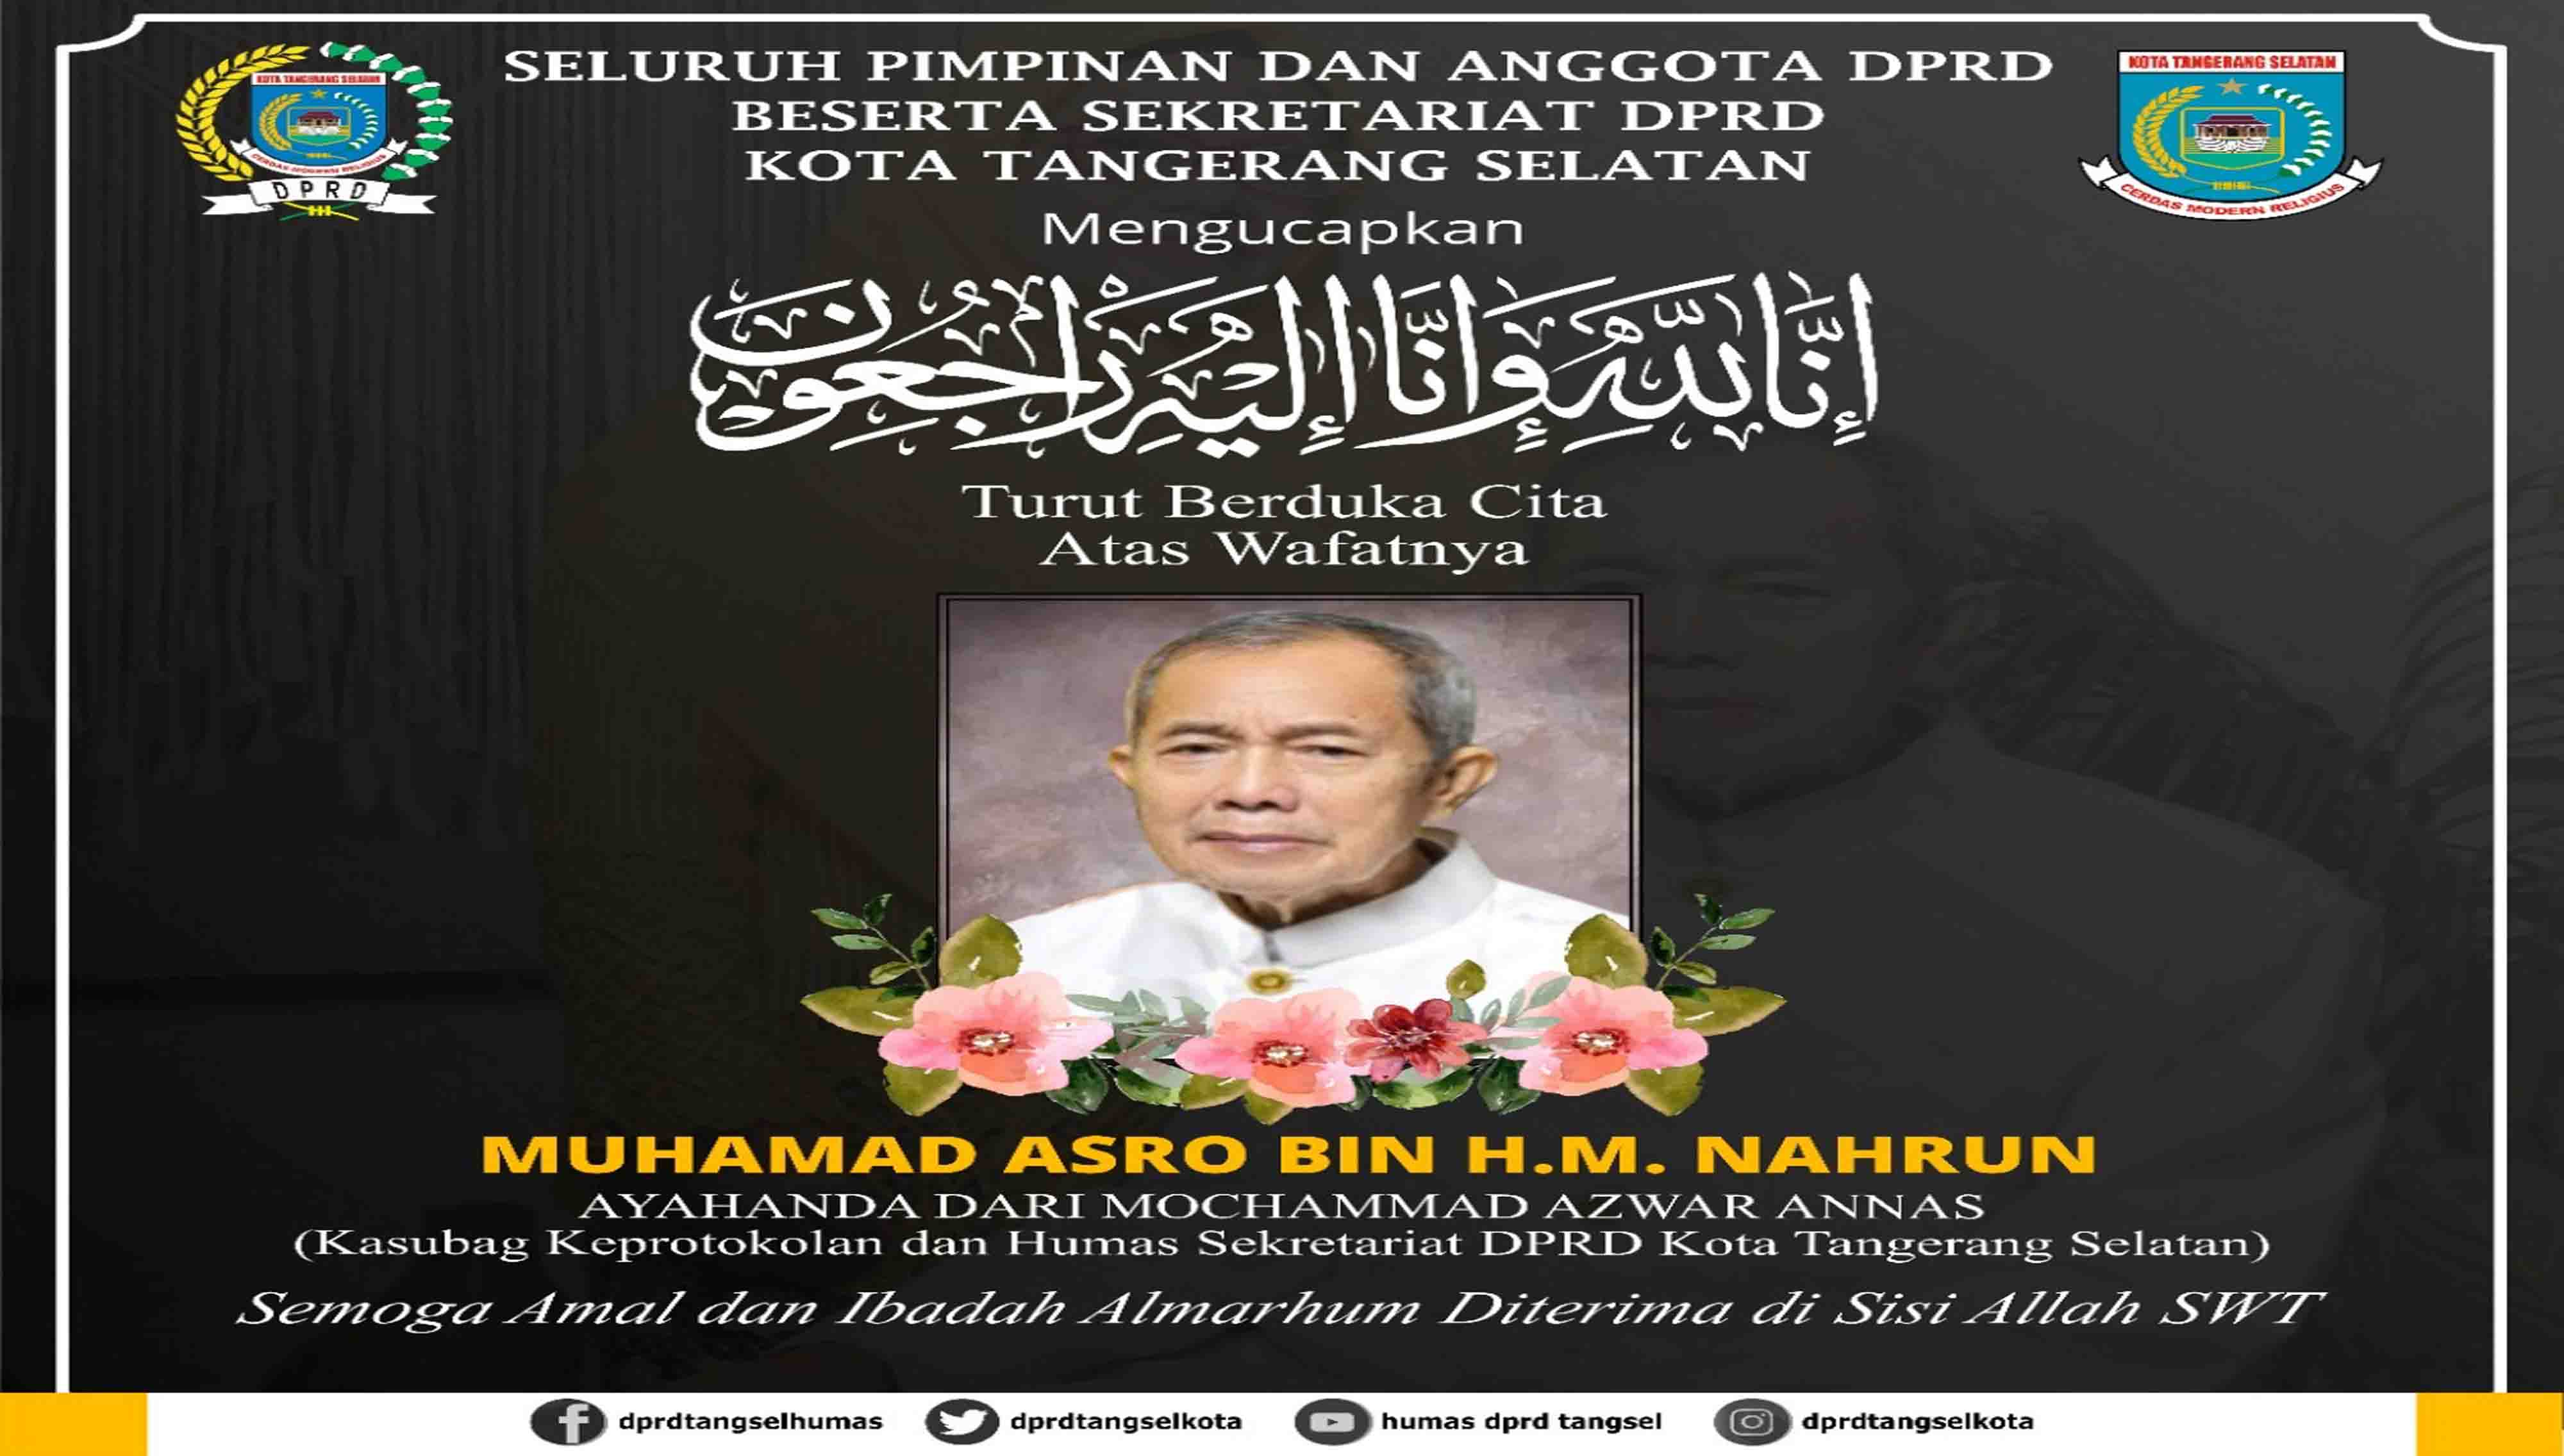 Turut Berduka Cita atas wafatnya Bapak Muhamad Asro bin H. M. Nahrun